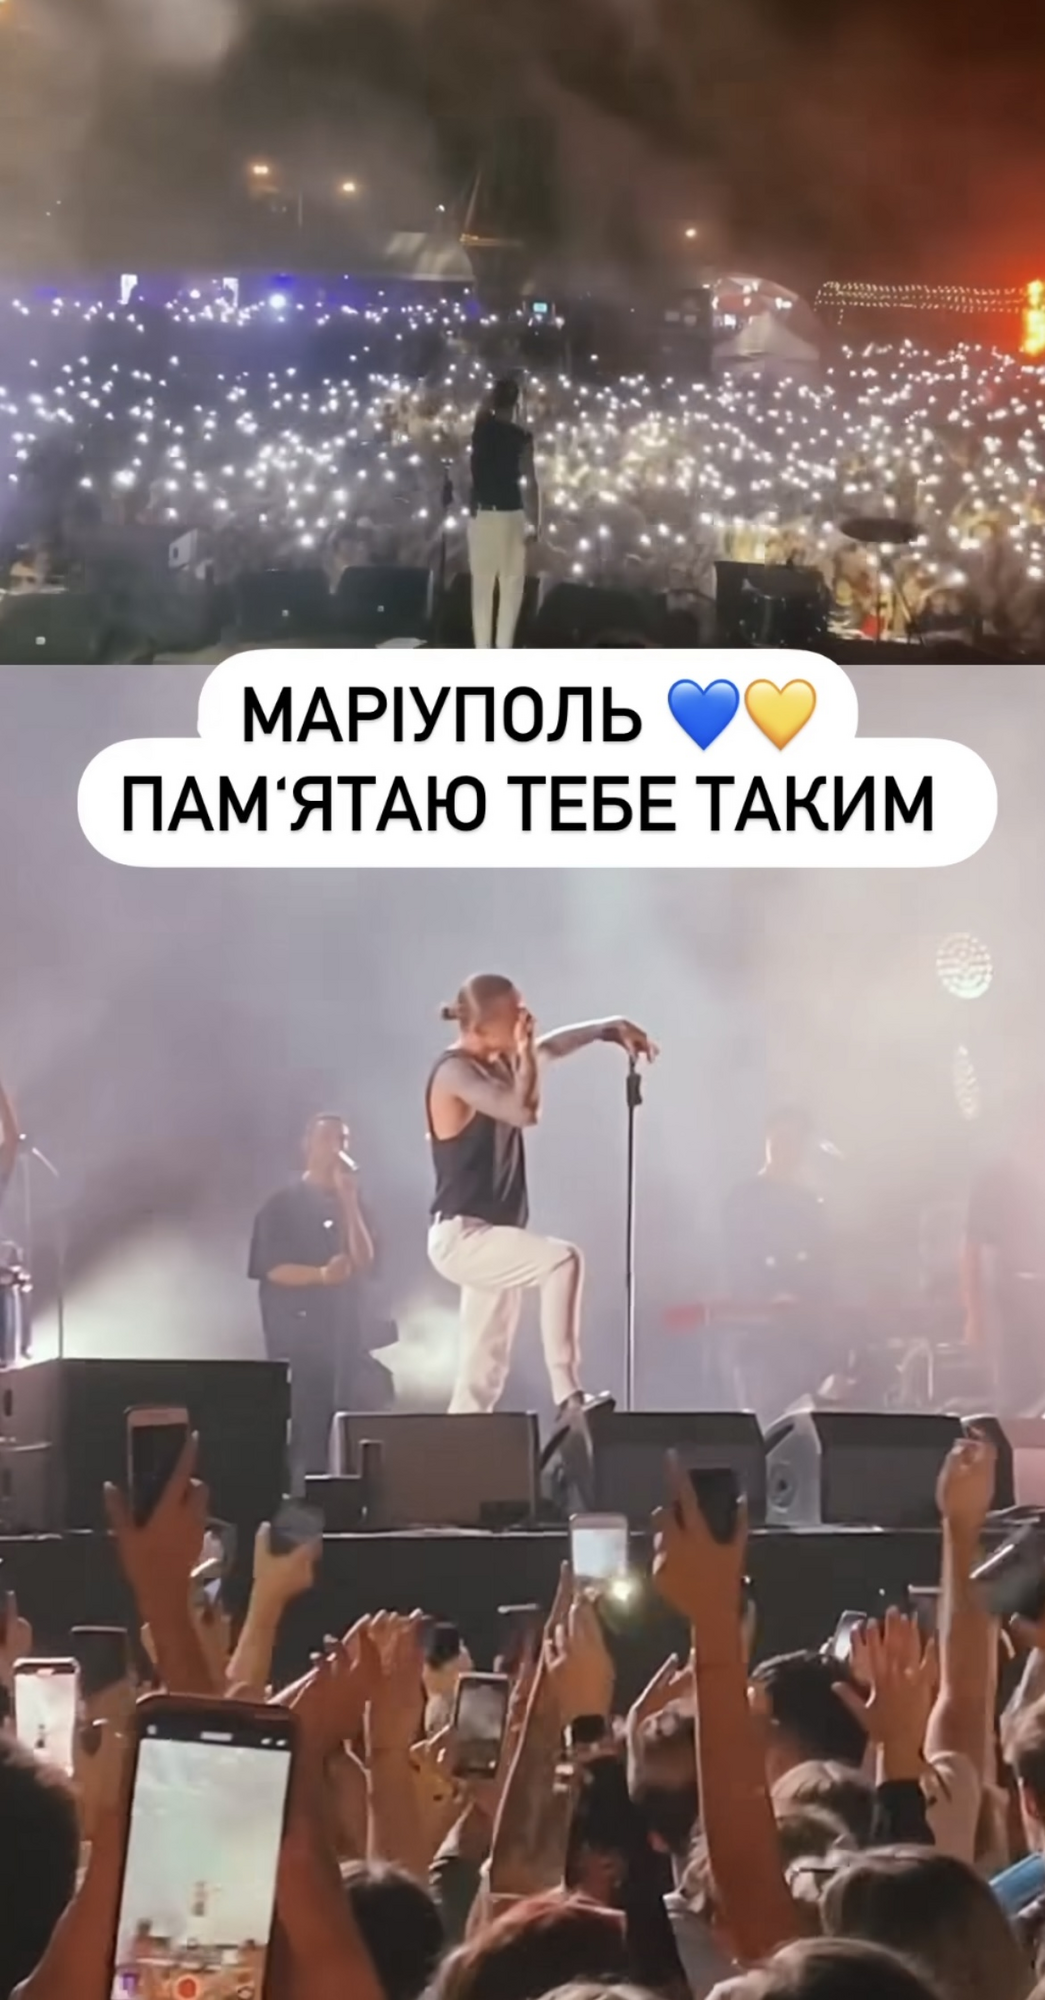 "Сердце разрывается снова и снова": Пивоваров растрогал фанатов воспоминаниями о концерте в Мариуполе. Видео